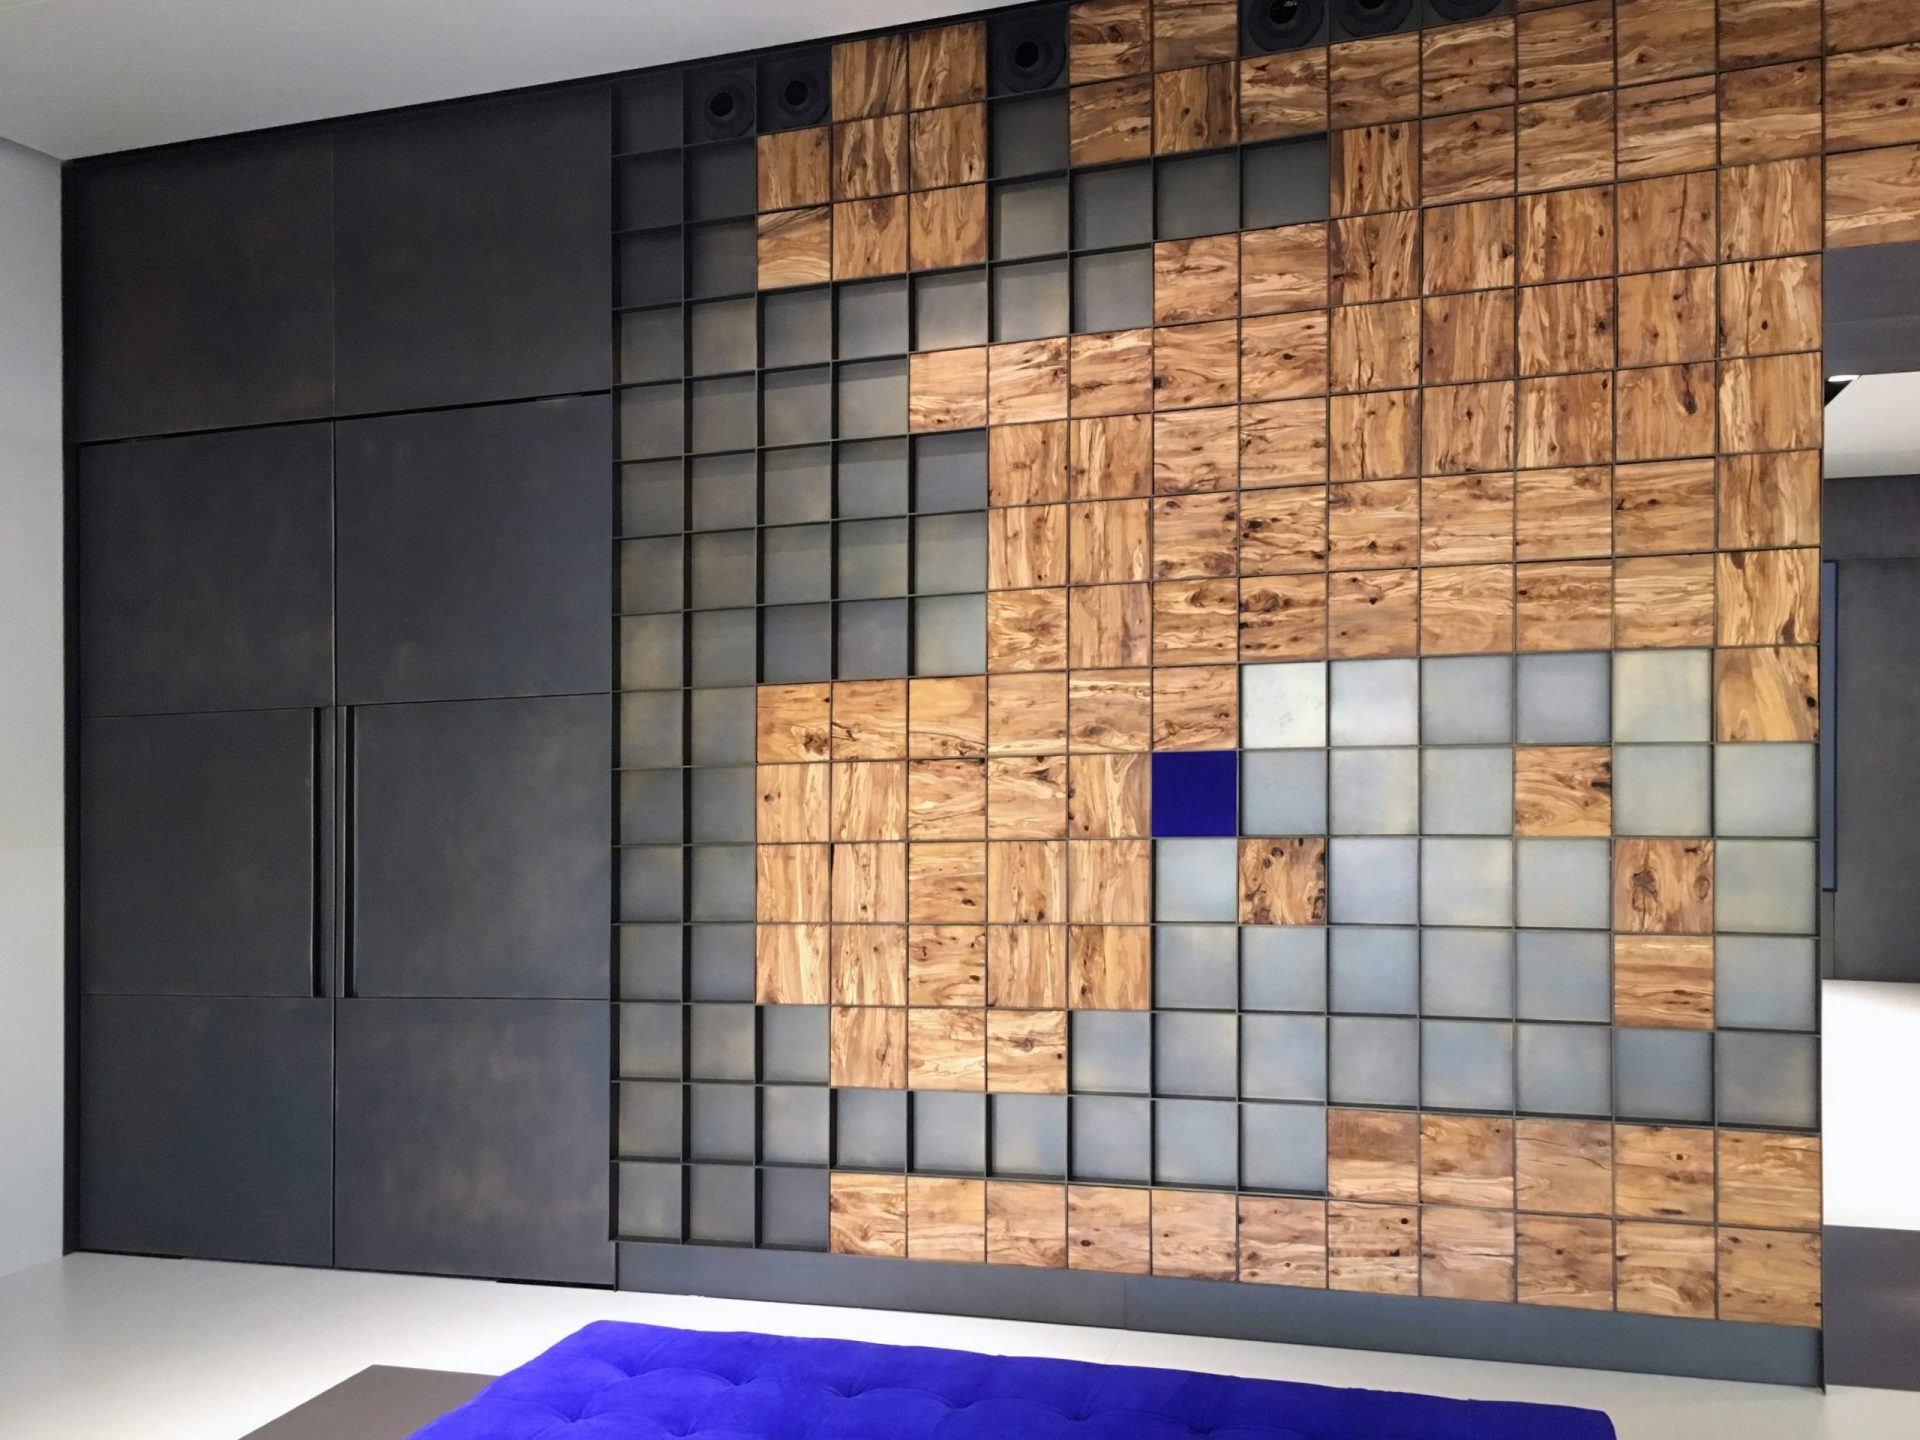 Vestíbulo con pared metálica y mapa del mundo hecho de cuadrados de madera